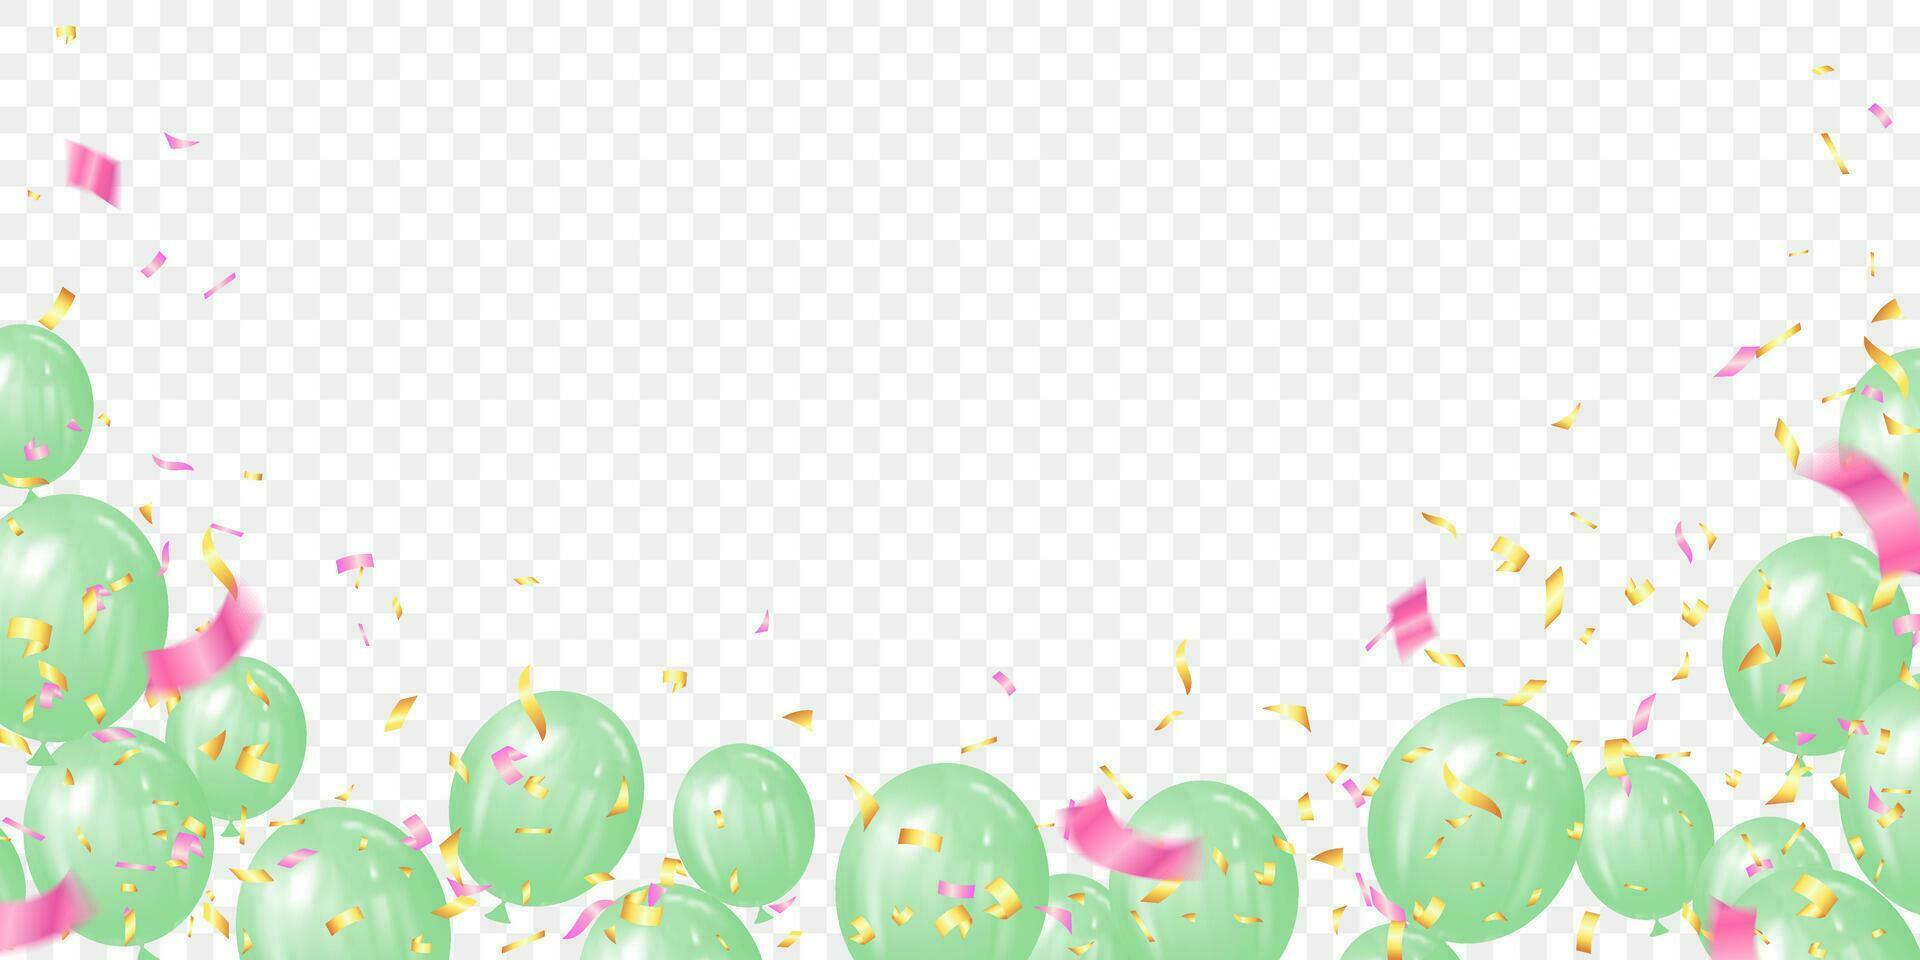 grön ballong, guld och rosa konfetti bakgrund vektor illustration. försäljning baner eller ram hälsning kort